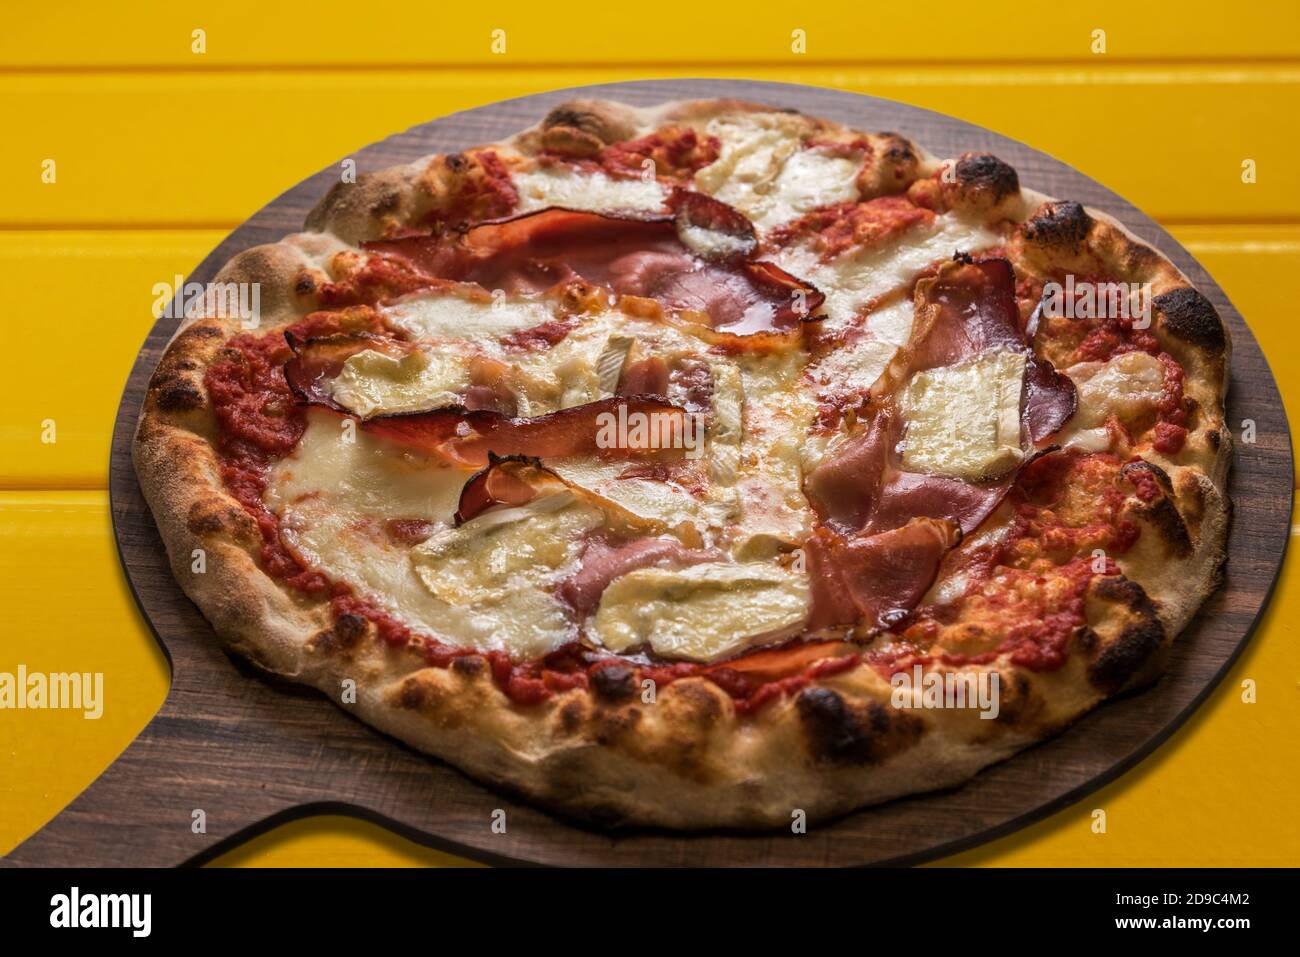 Pizza au bacon ou au fromage blanc et à la brie et à la sauce tomate. Produit italien typique sur une planche à découper en bois sur fond jaune Banque D'Images